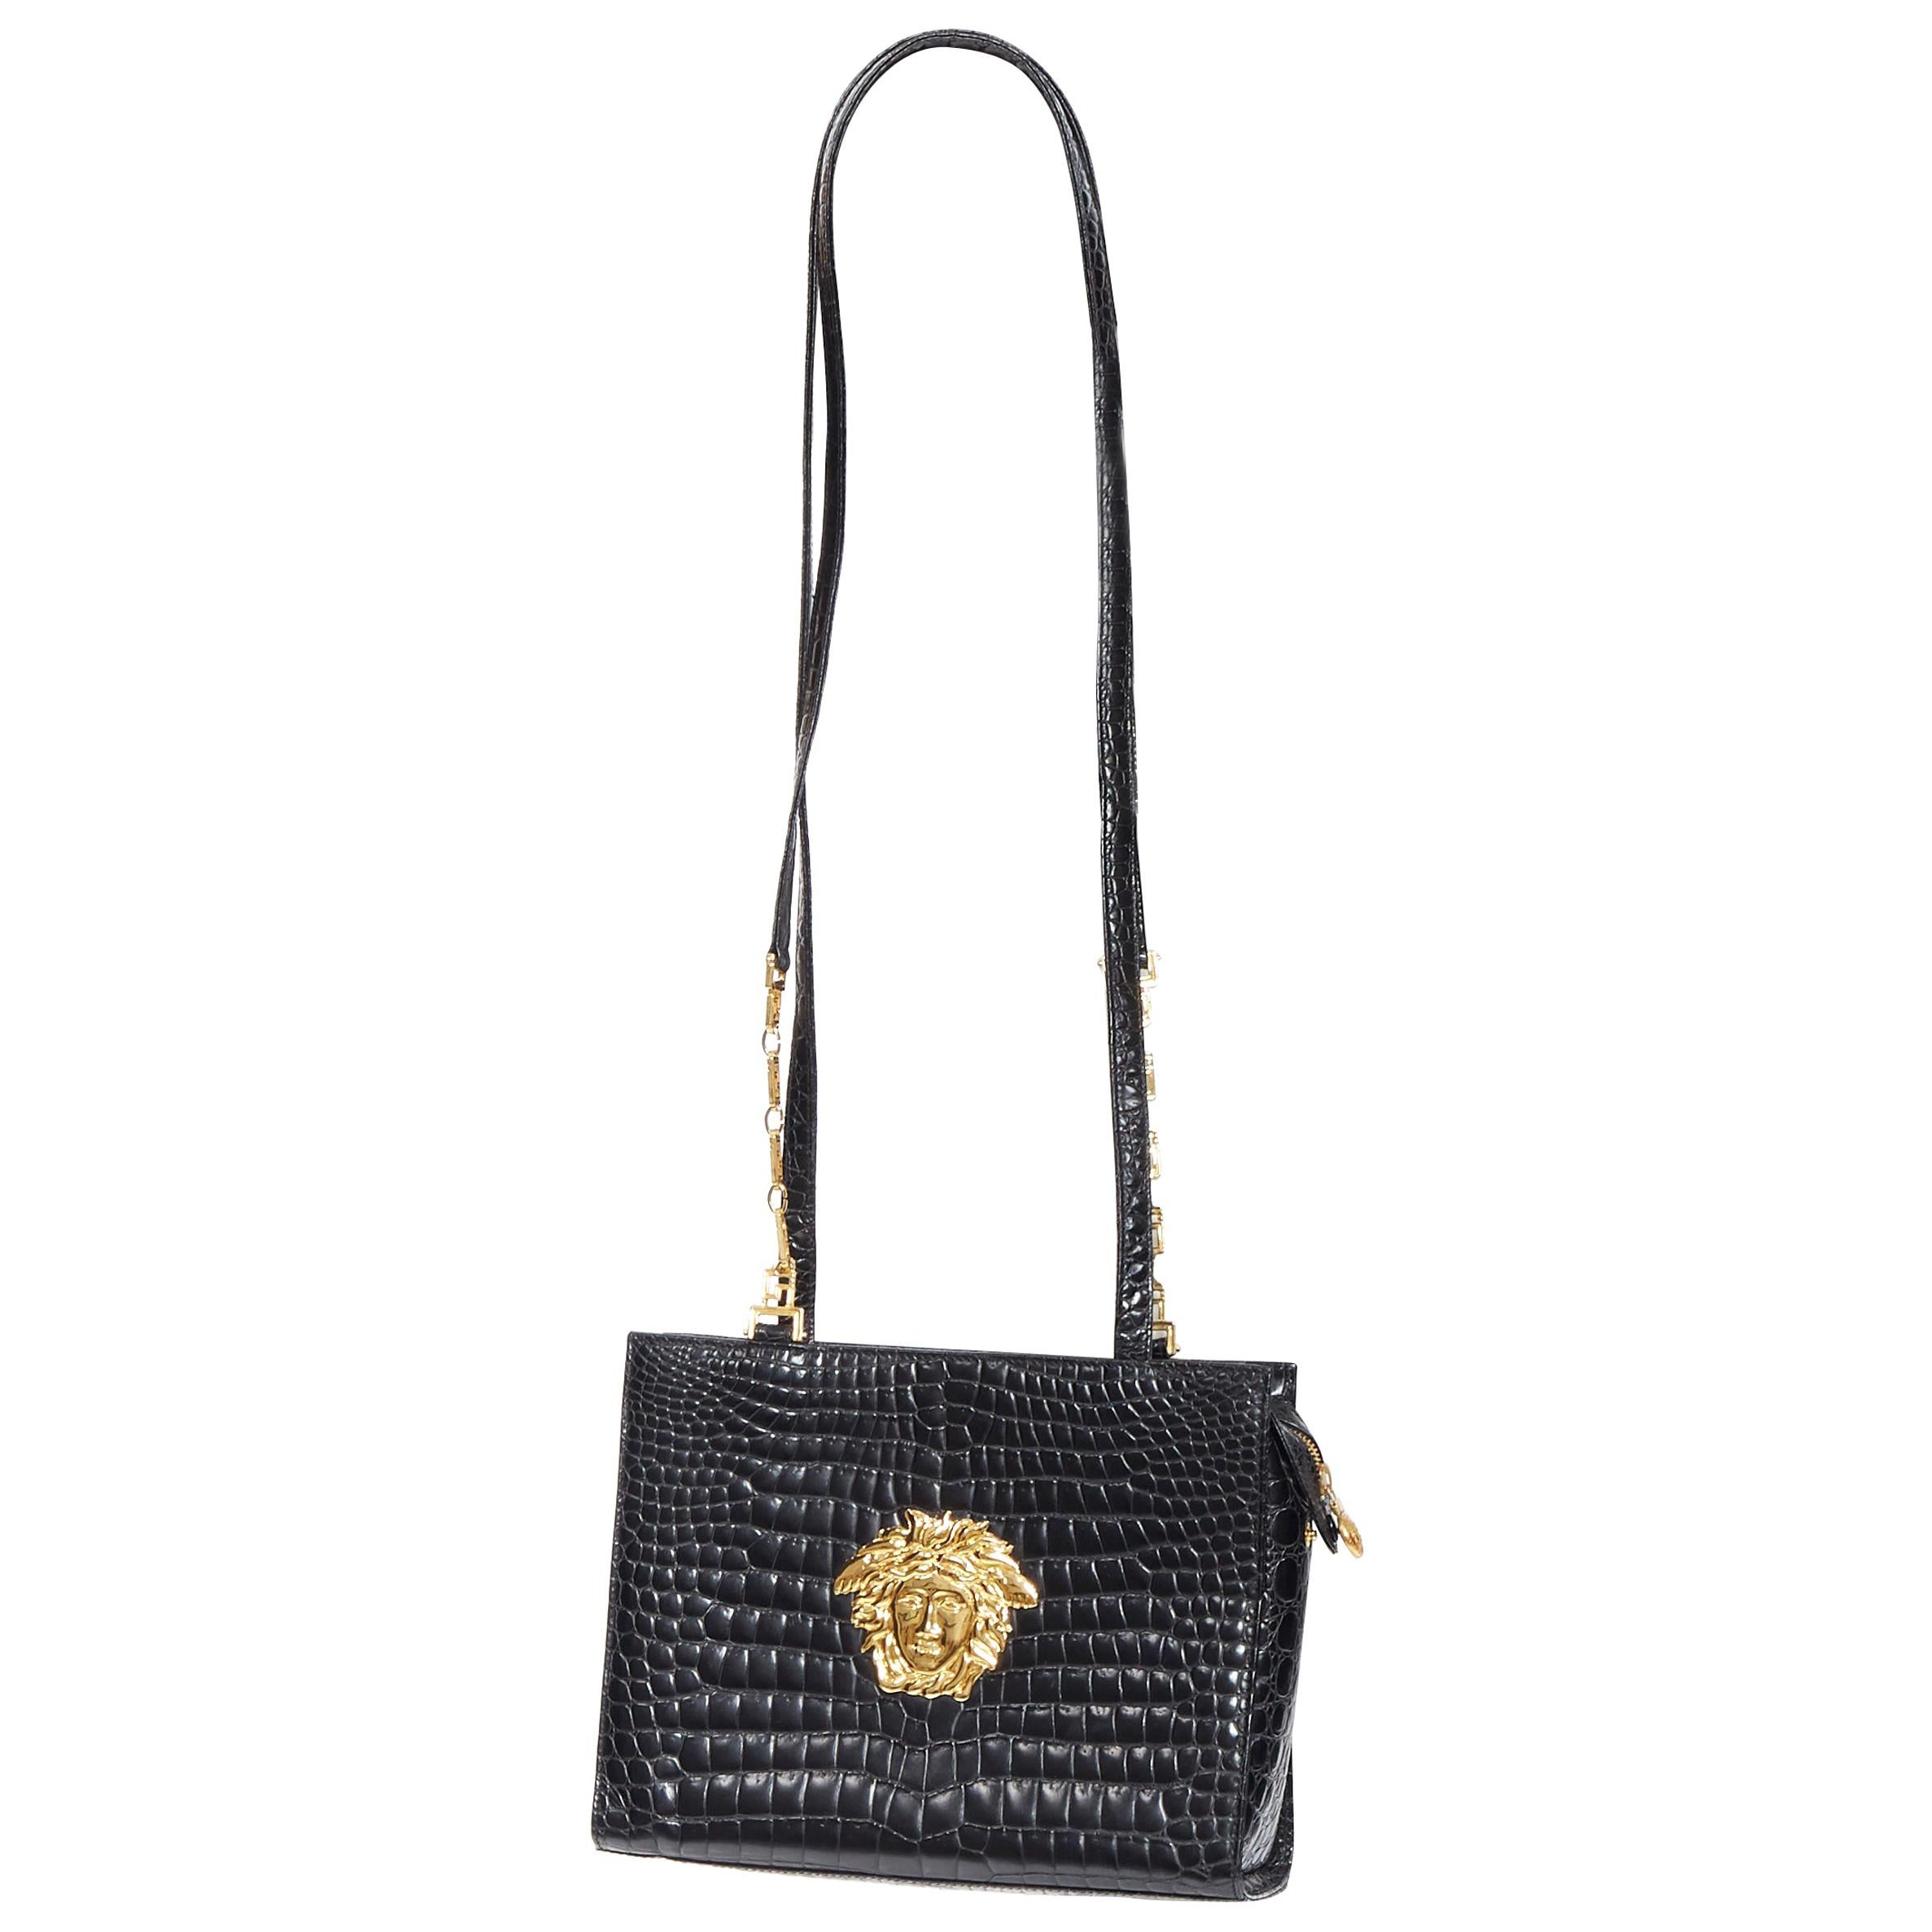 Authentic Gianni Versace Black Nylon Shoulder Bag